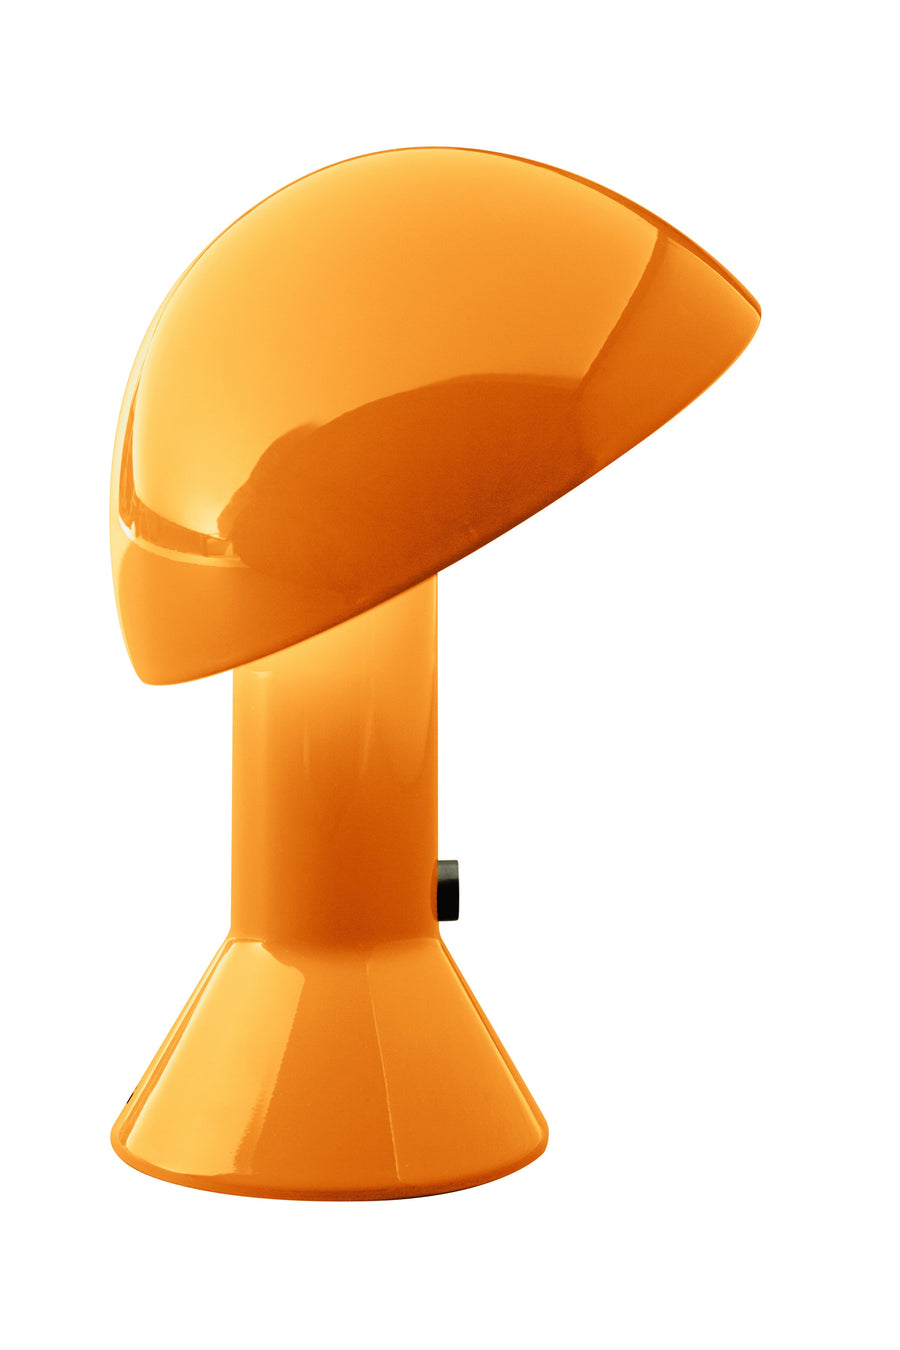 Elmetto Table Lamp in Orange